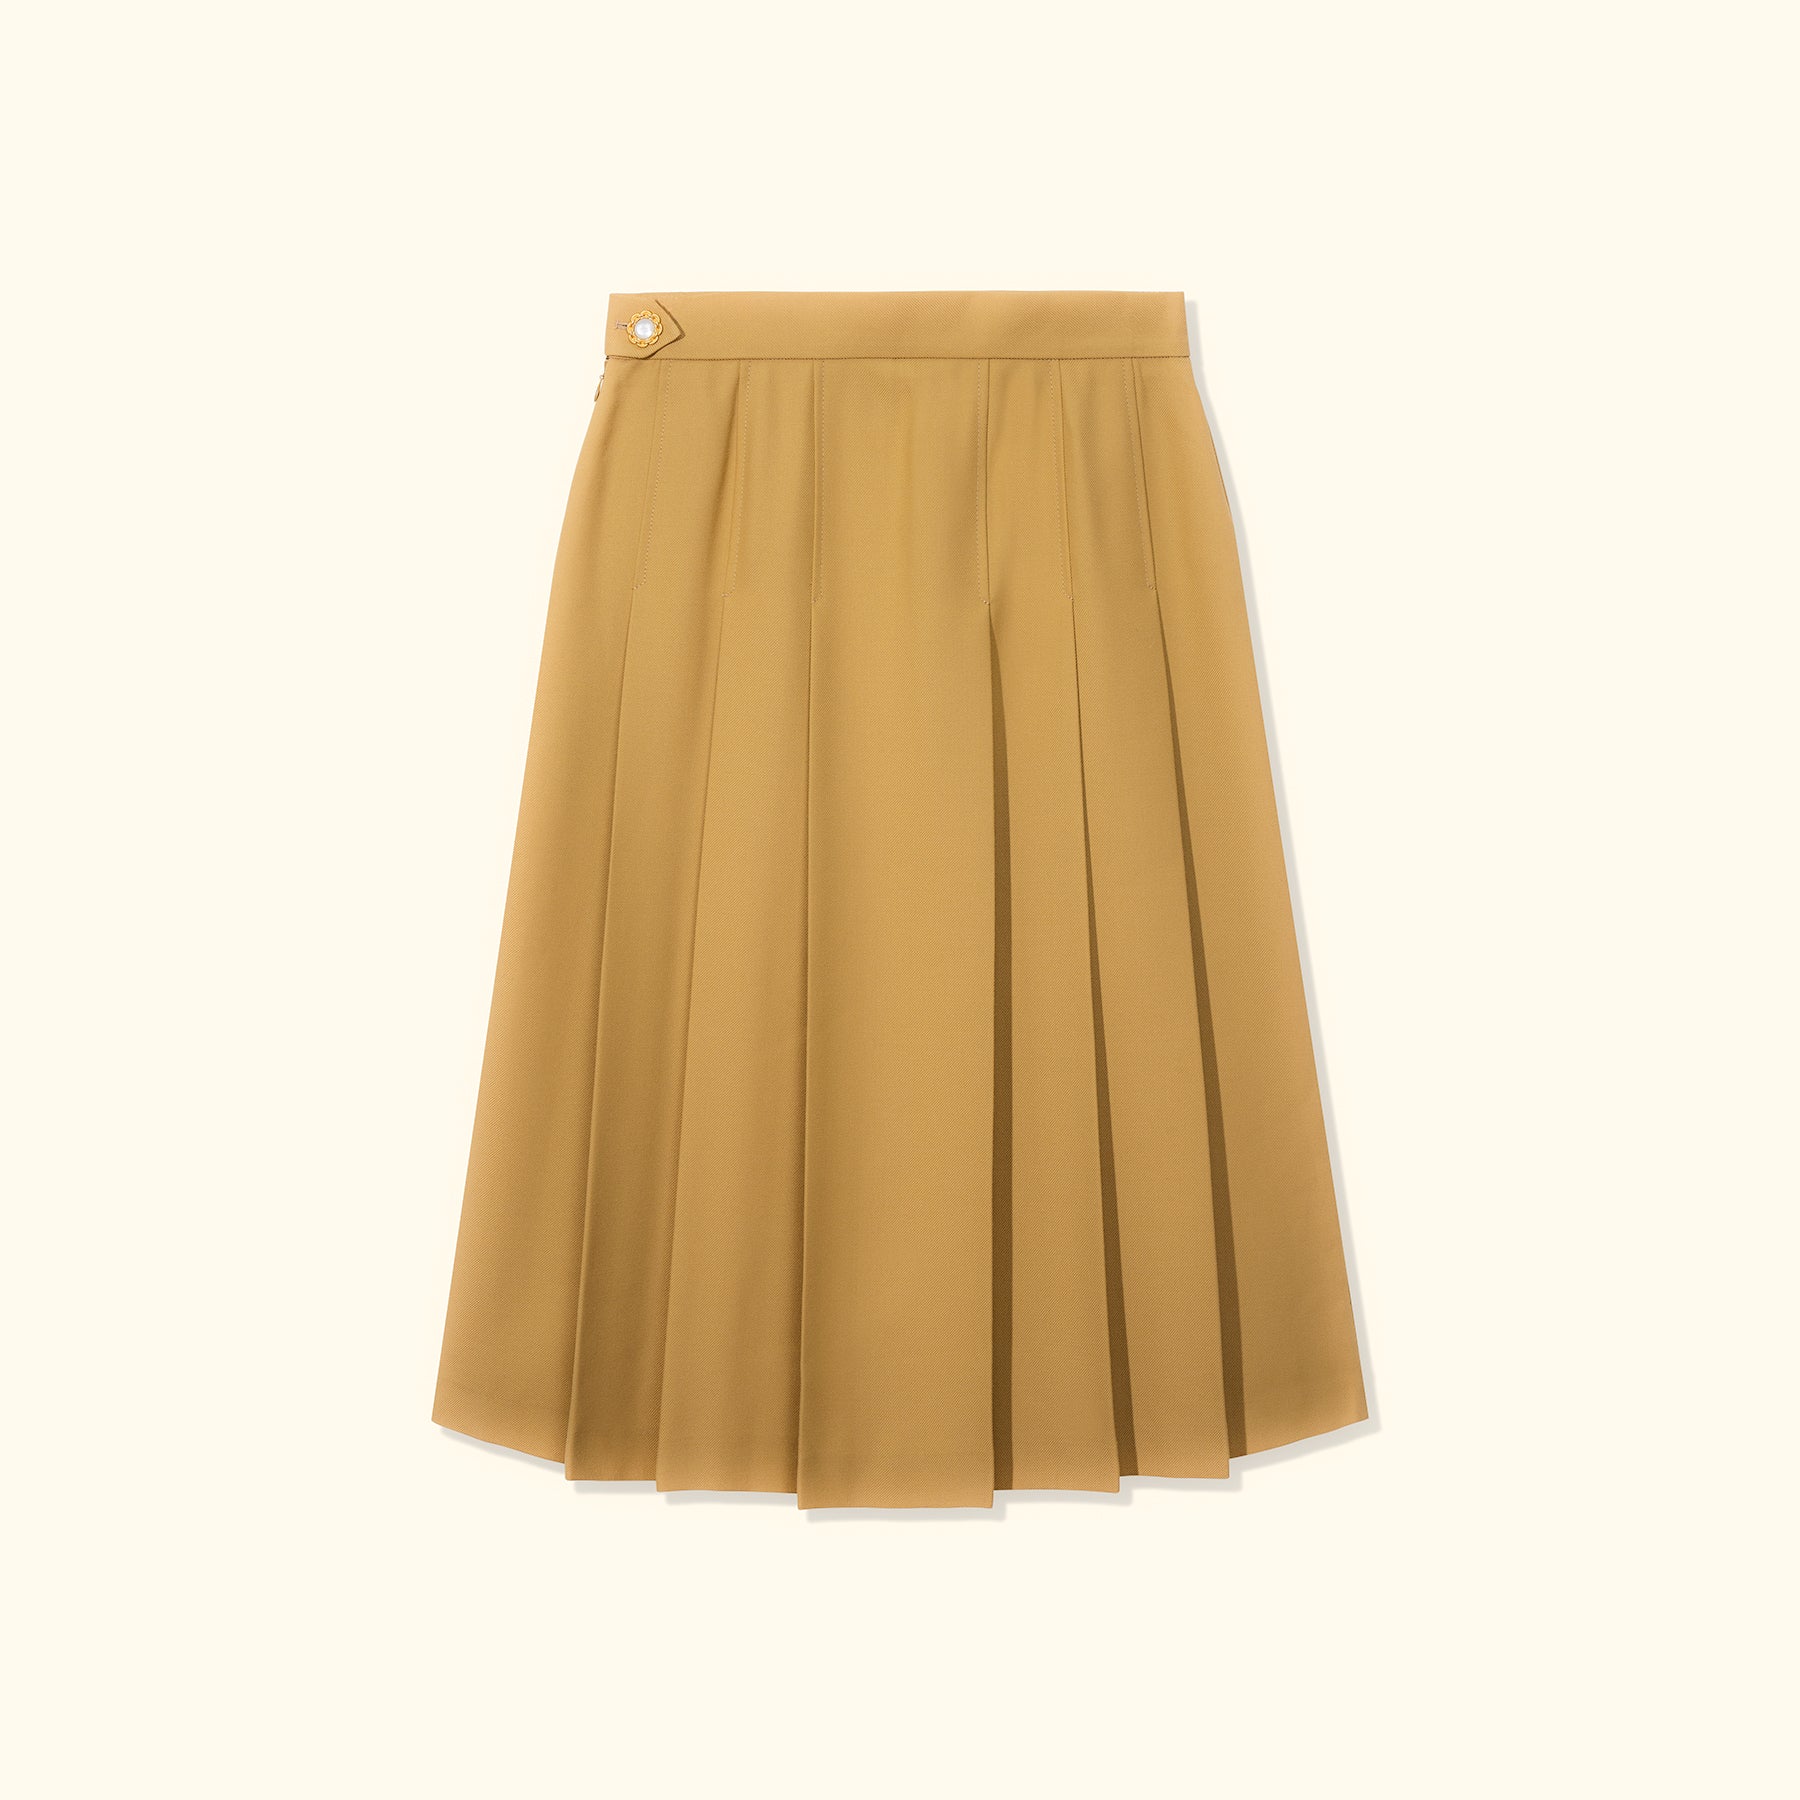 Tan Pleated Skirt